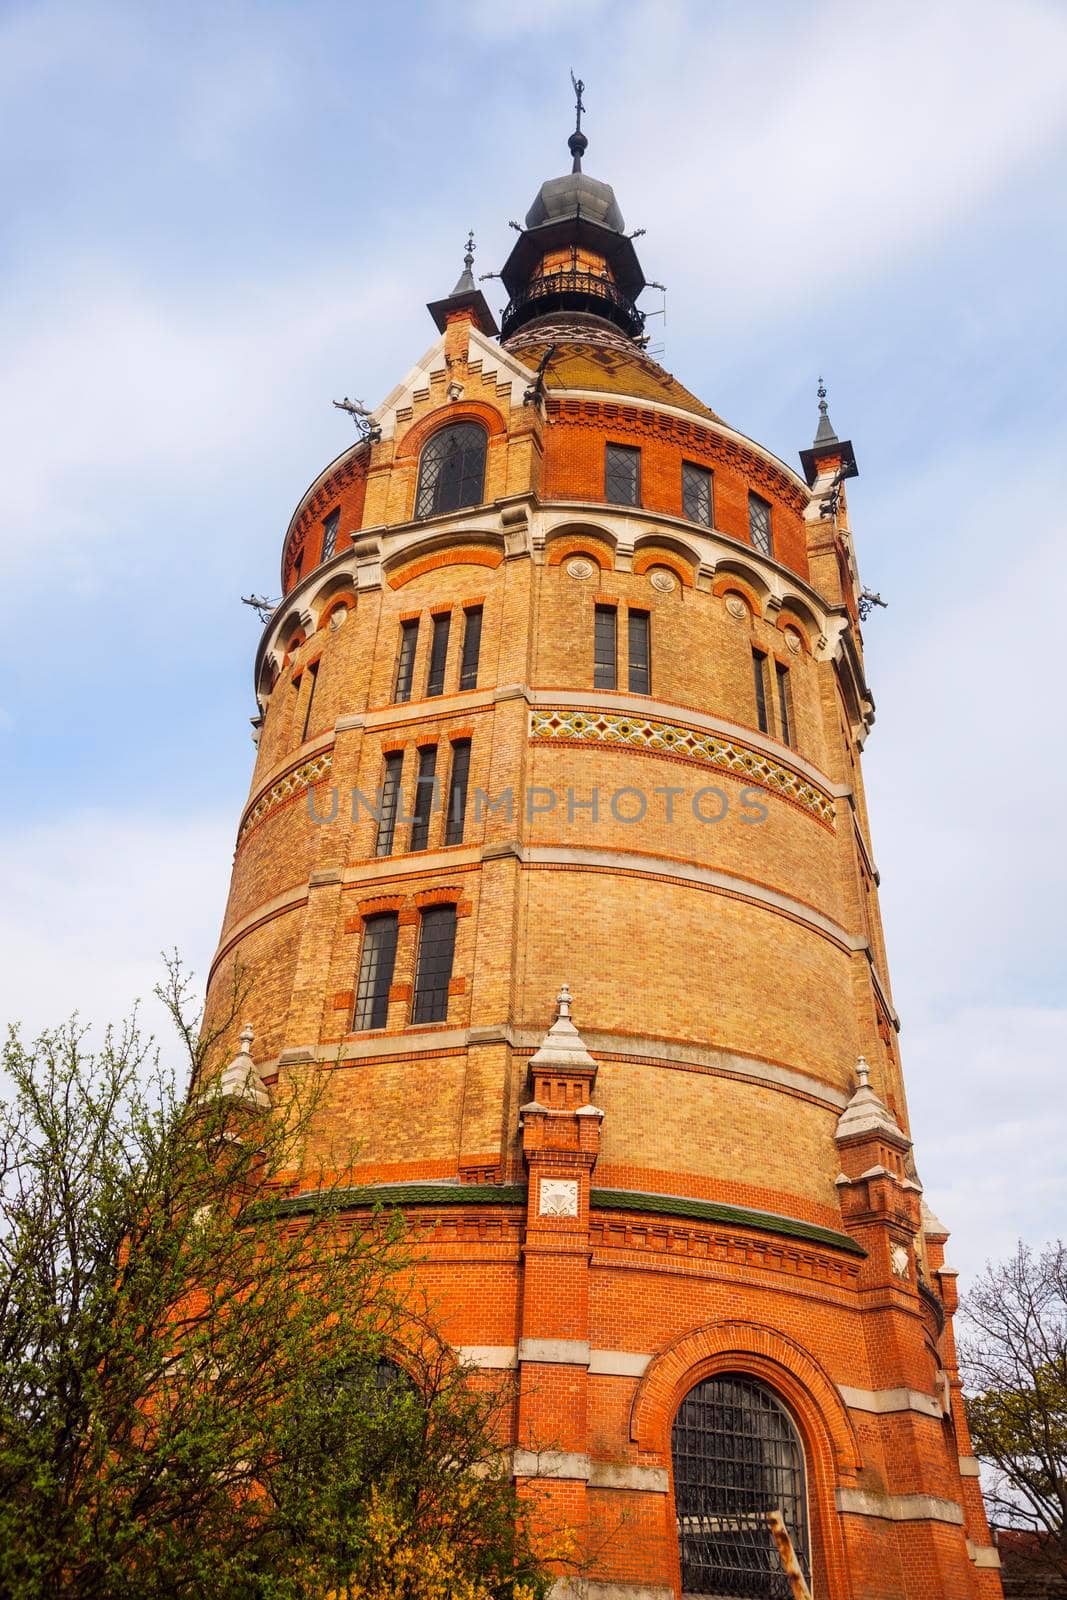 Wasserturm in Vienna by benkrut